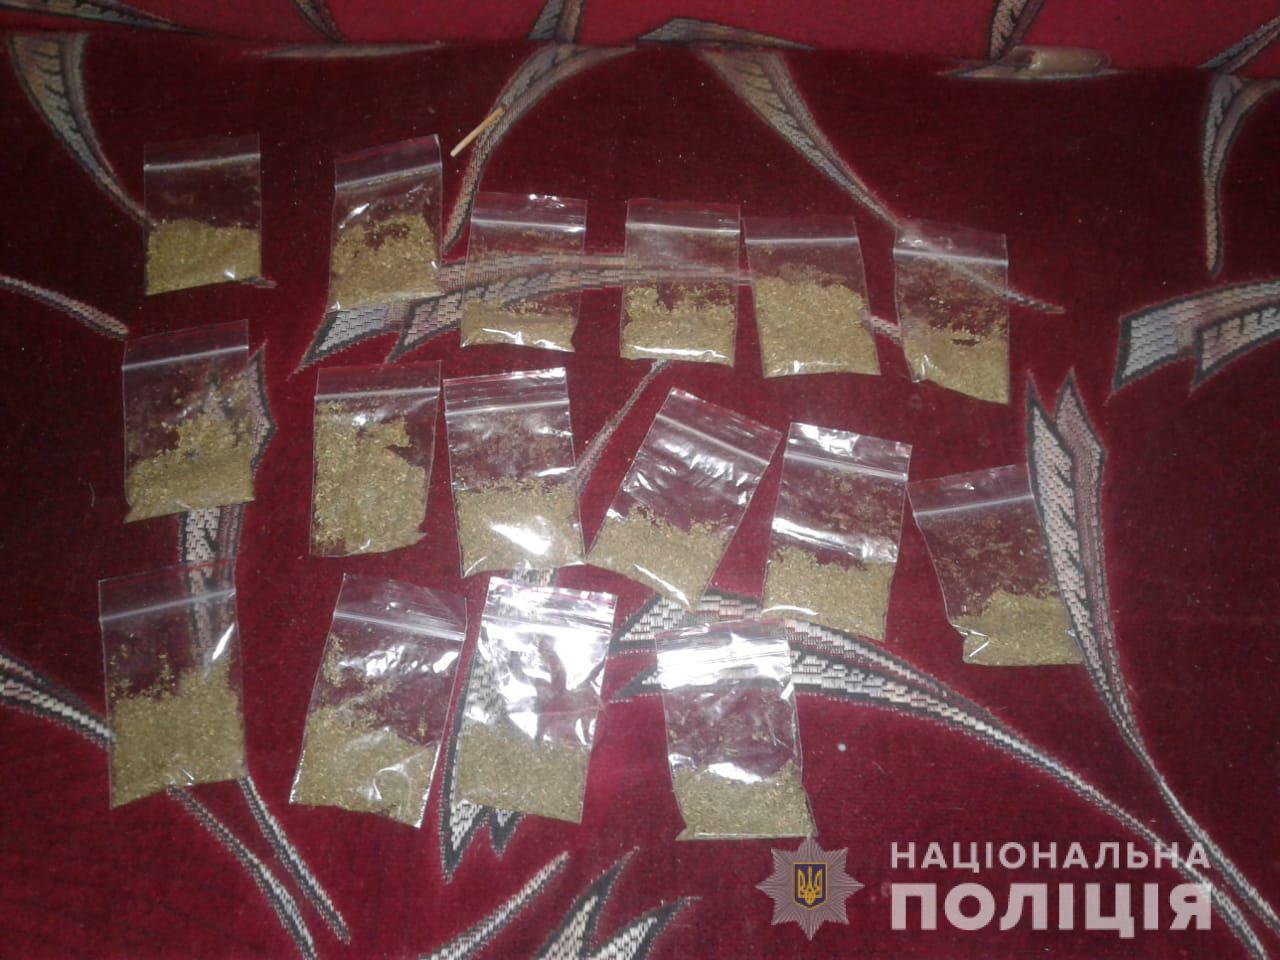 В Измаиле задержан очередной молодой наркоман: амфетамин, марихуана - все при нем